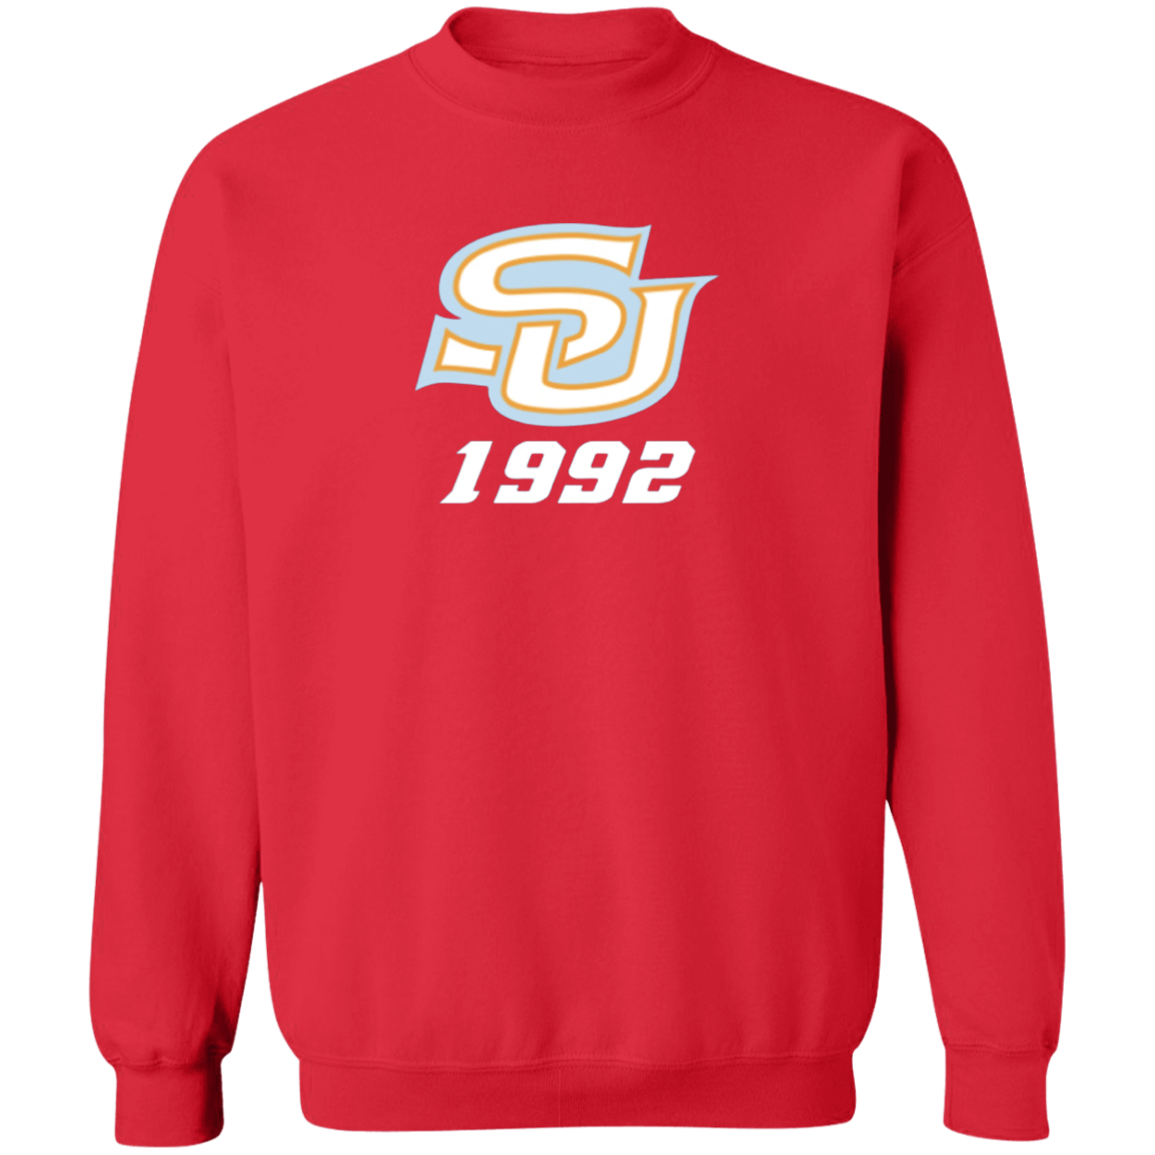 SU c/o 1992  Z65x Pullover Crewneck Sweatshirt 8 oz (Closeout)